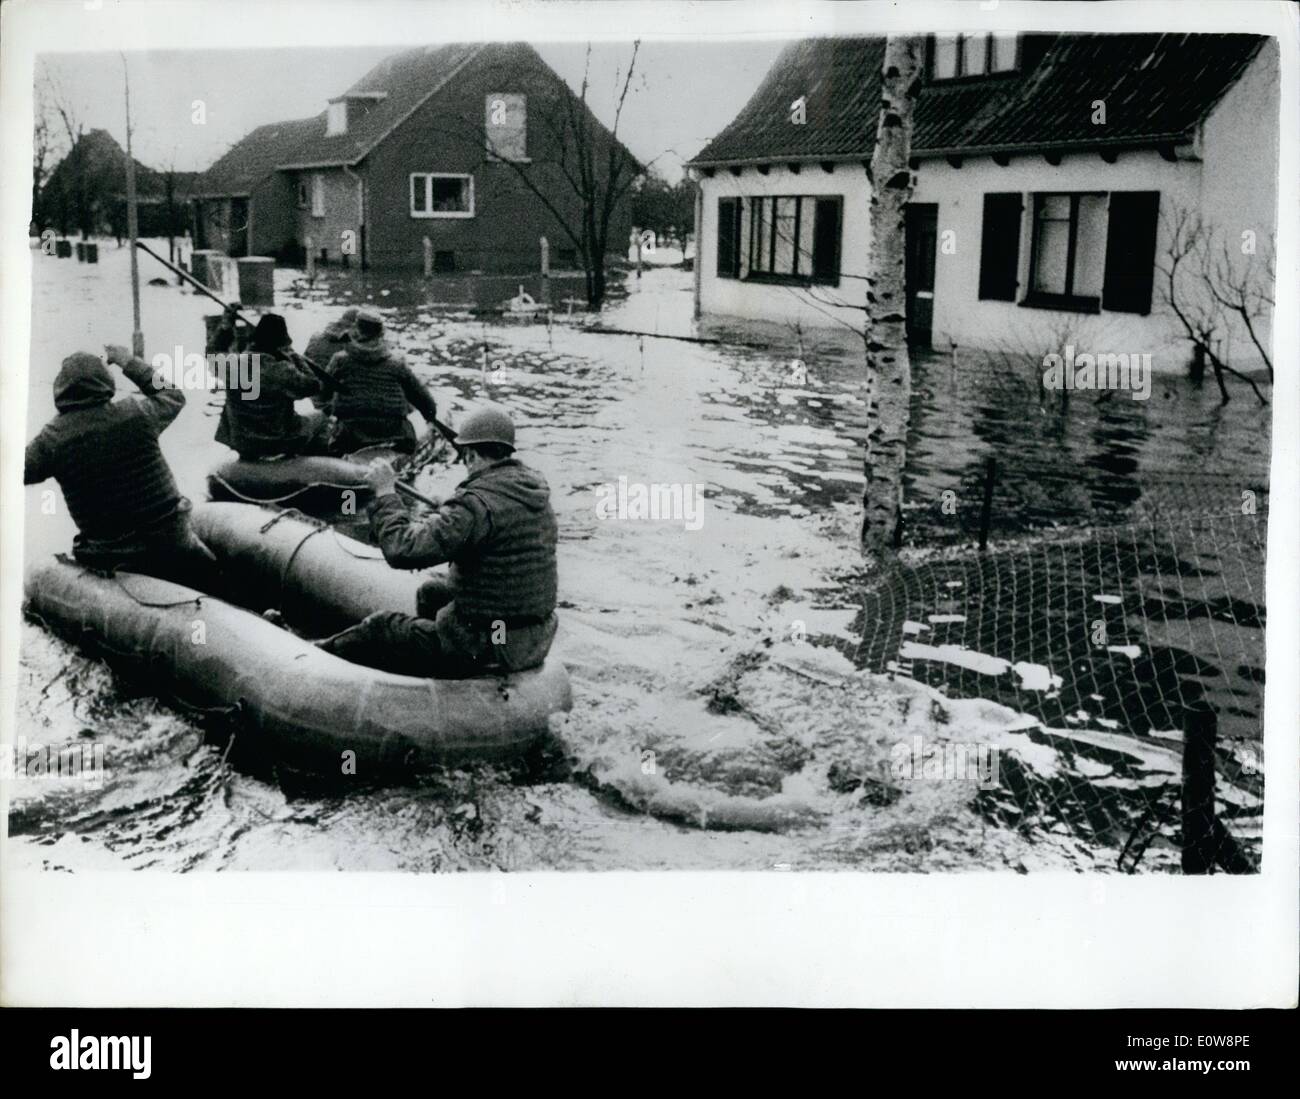 10 févr. 02, 1962 - Les troupes britanniques de l'aide dans les opérations de sauvetage -en plus grande catastrophe de l'histoire de l'Allemagne:L Six cents soldats britanniques sont parmi les milliers d'aides - avec des bateaux d'assaut - remorqueurs etc. sauver des milliers marooned par les pires inondations en Allemagne en mémoire. Ils se sont précipités en action samedi en fin de soirée des grandes marées dans l'estuaire de l'Elbe, entassés par l'ouragan - vent de la mer du Nord ont bondi dans Hambourg. Deux cent quarante six personnes sont inscrites comme disparues plus mort Banque D'Images